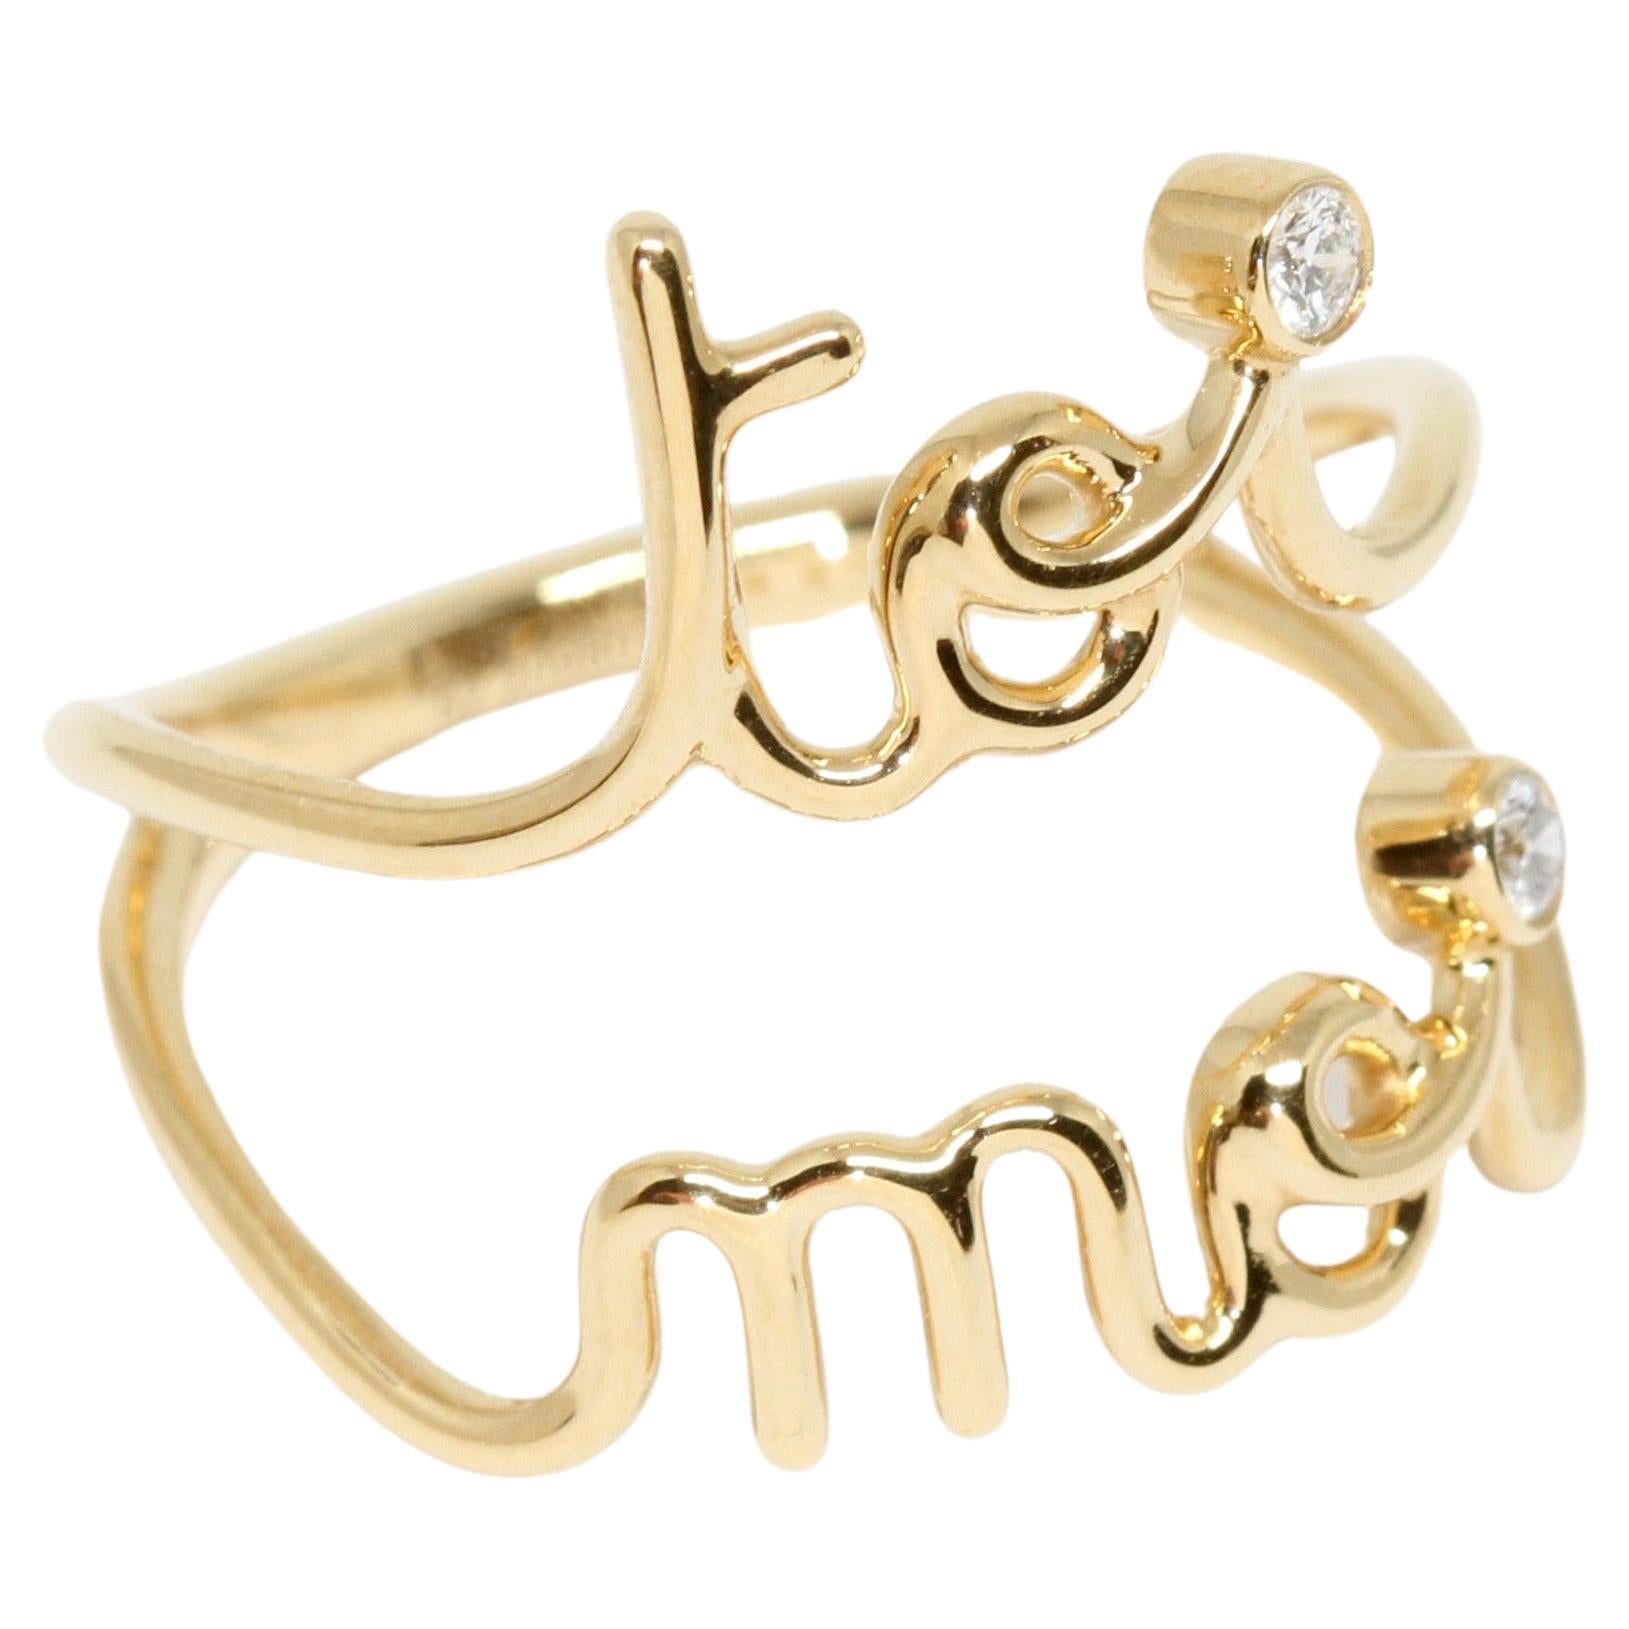 Christian Dior Oui Toi Moi 18K Yellow Gold Diamond Ring at 1stDibs | toi moi  ring dior, dior toi moi ring, toi moi dior ring